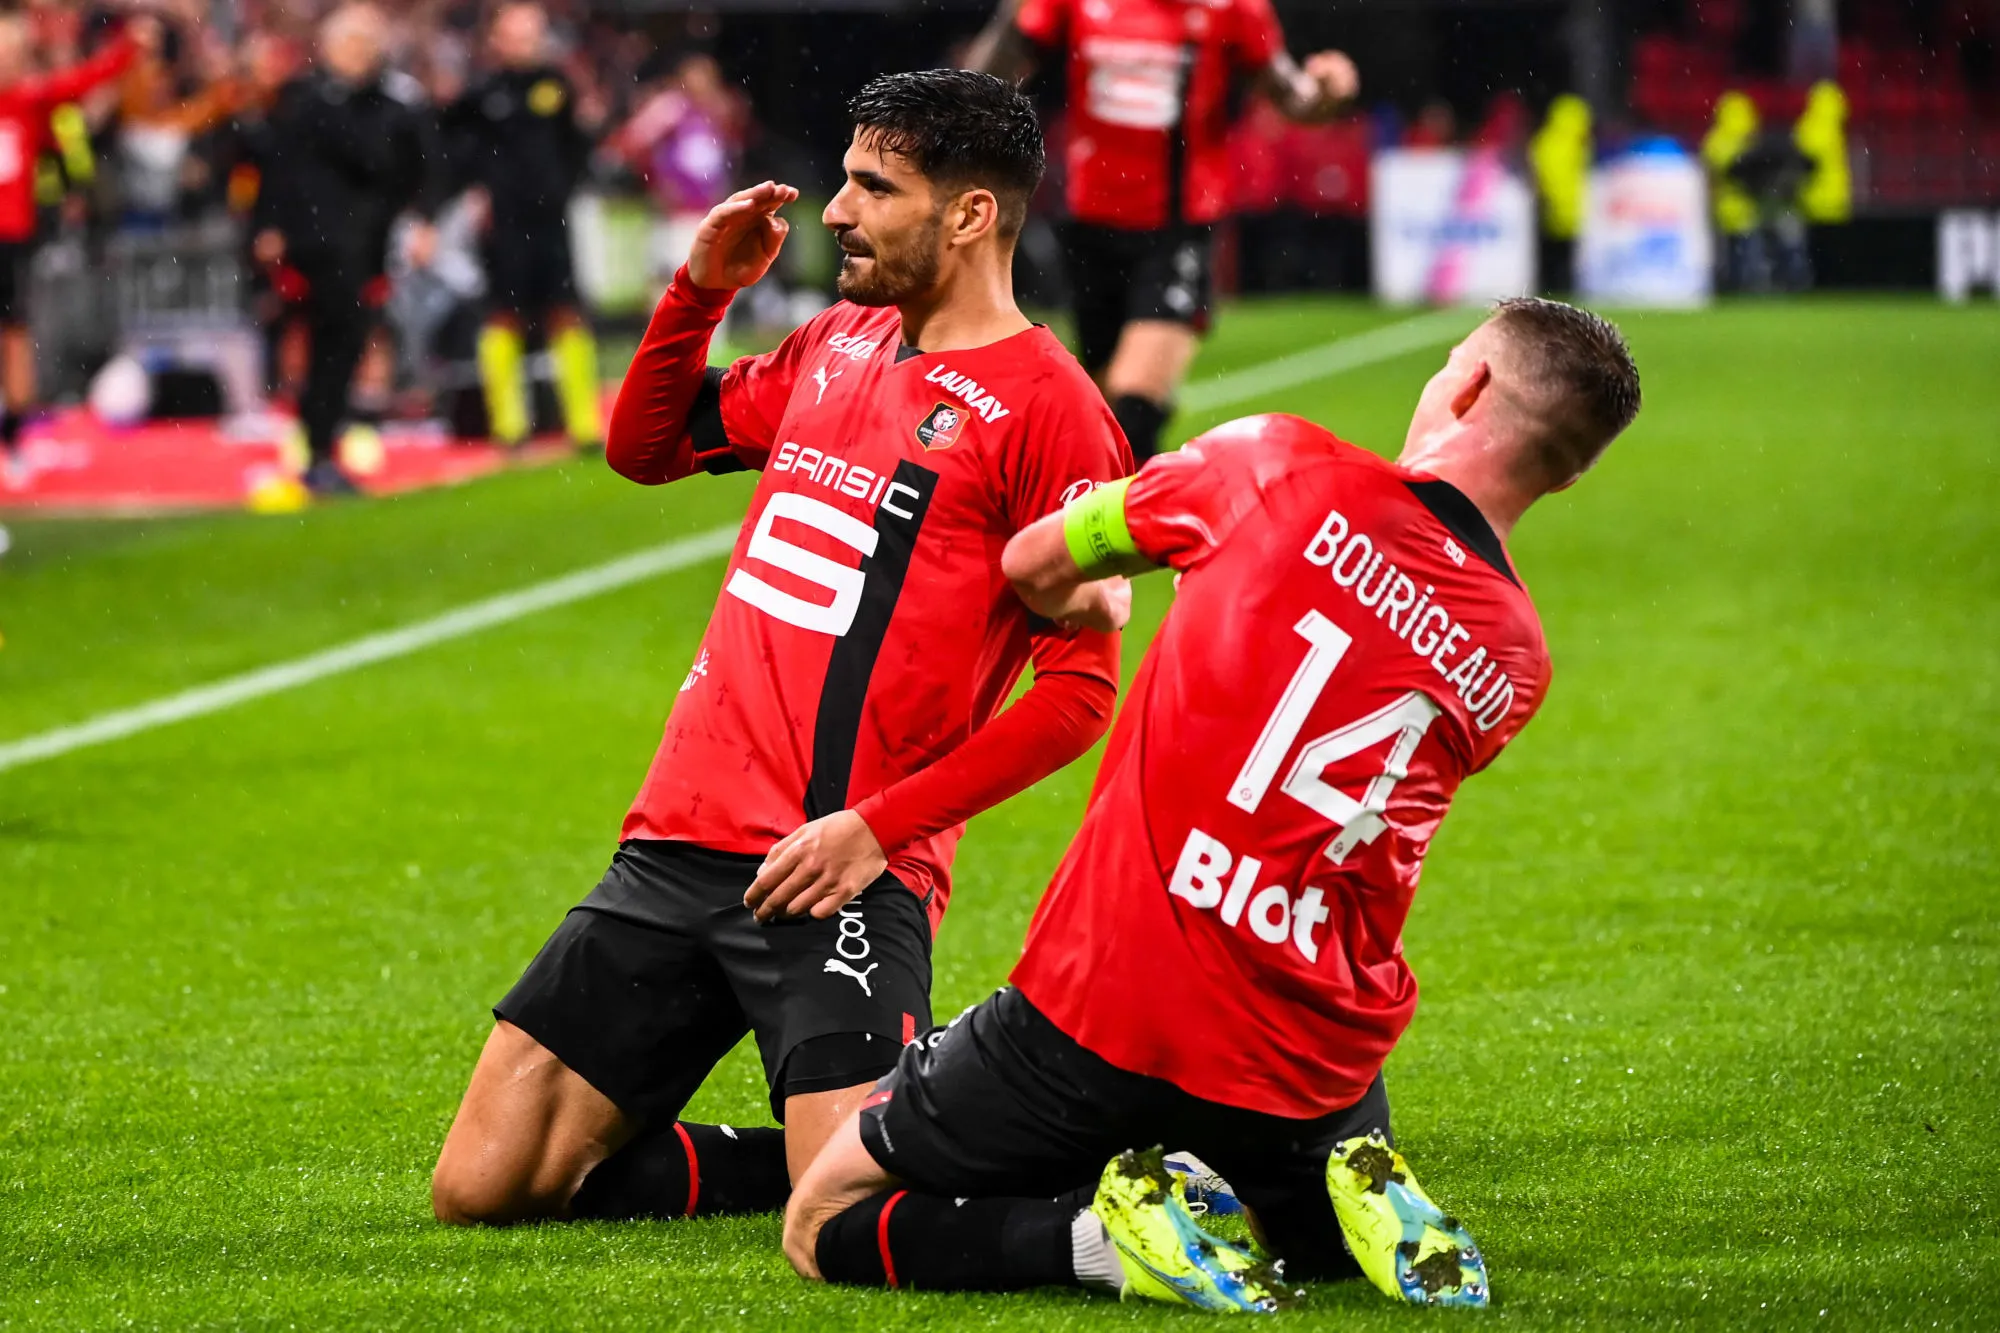 Pronostic Rennes Fenerbahce : analyse, cotes et pronos du match de Ligue Europa